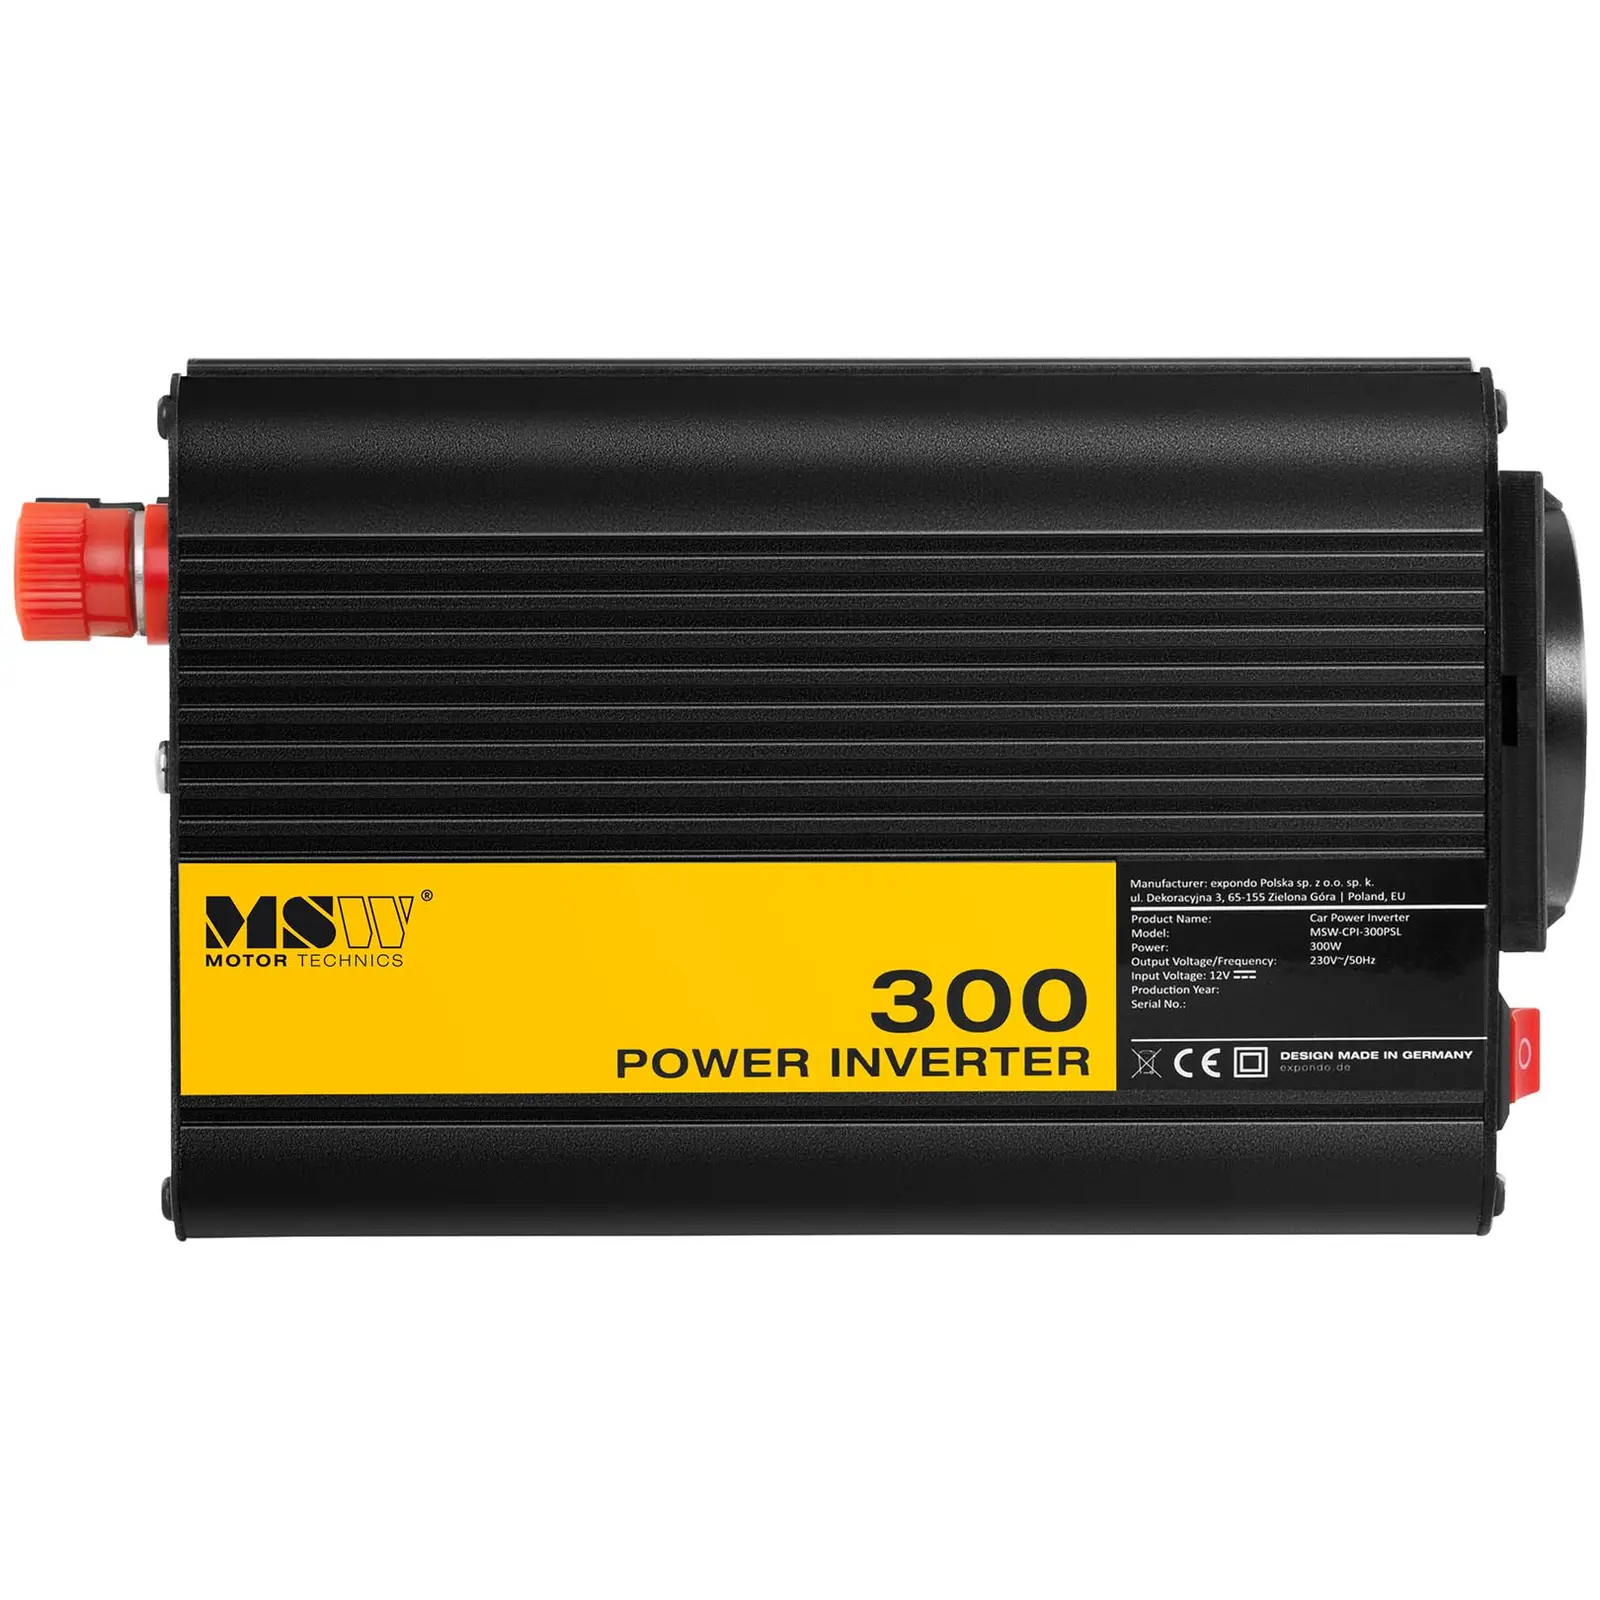 Power inverter - Pure Sine - 300 W